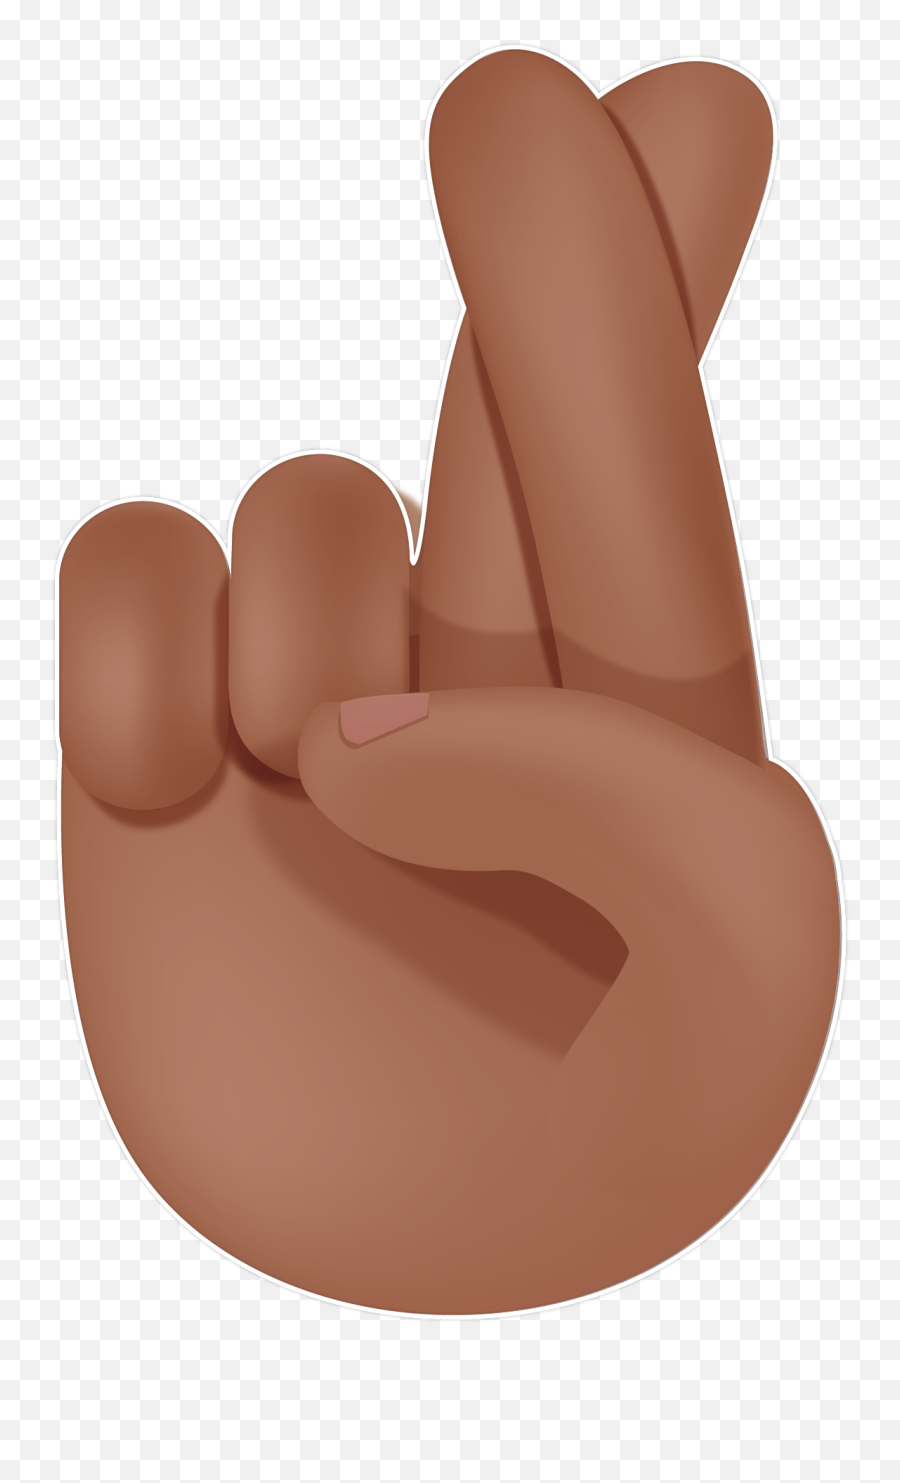 Fingers Crossed Emoji - Two Fingers Crossed Emoji,Crossed Eyes Emoji